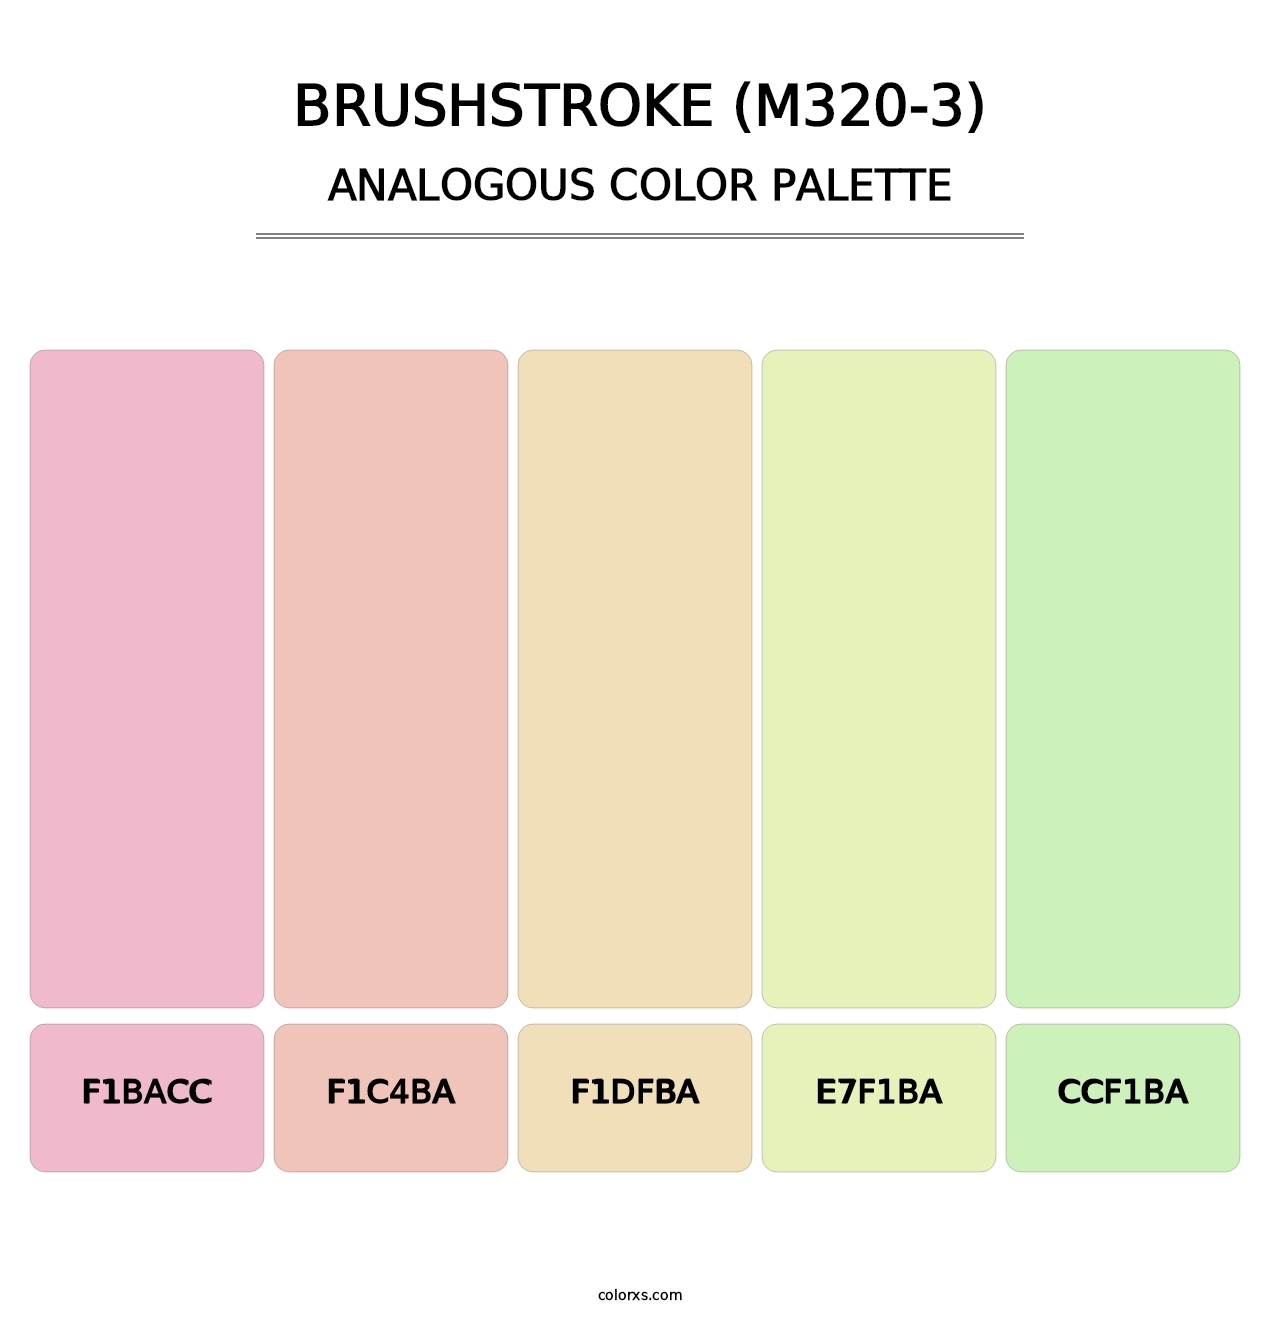 Brushstroke (M320-3) - Analogous Color Palette